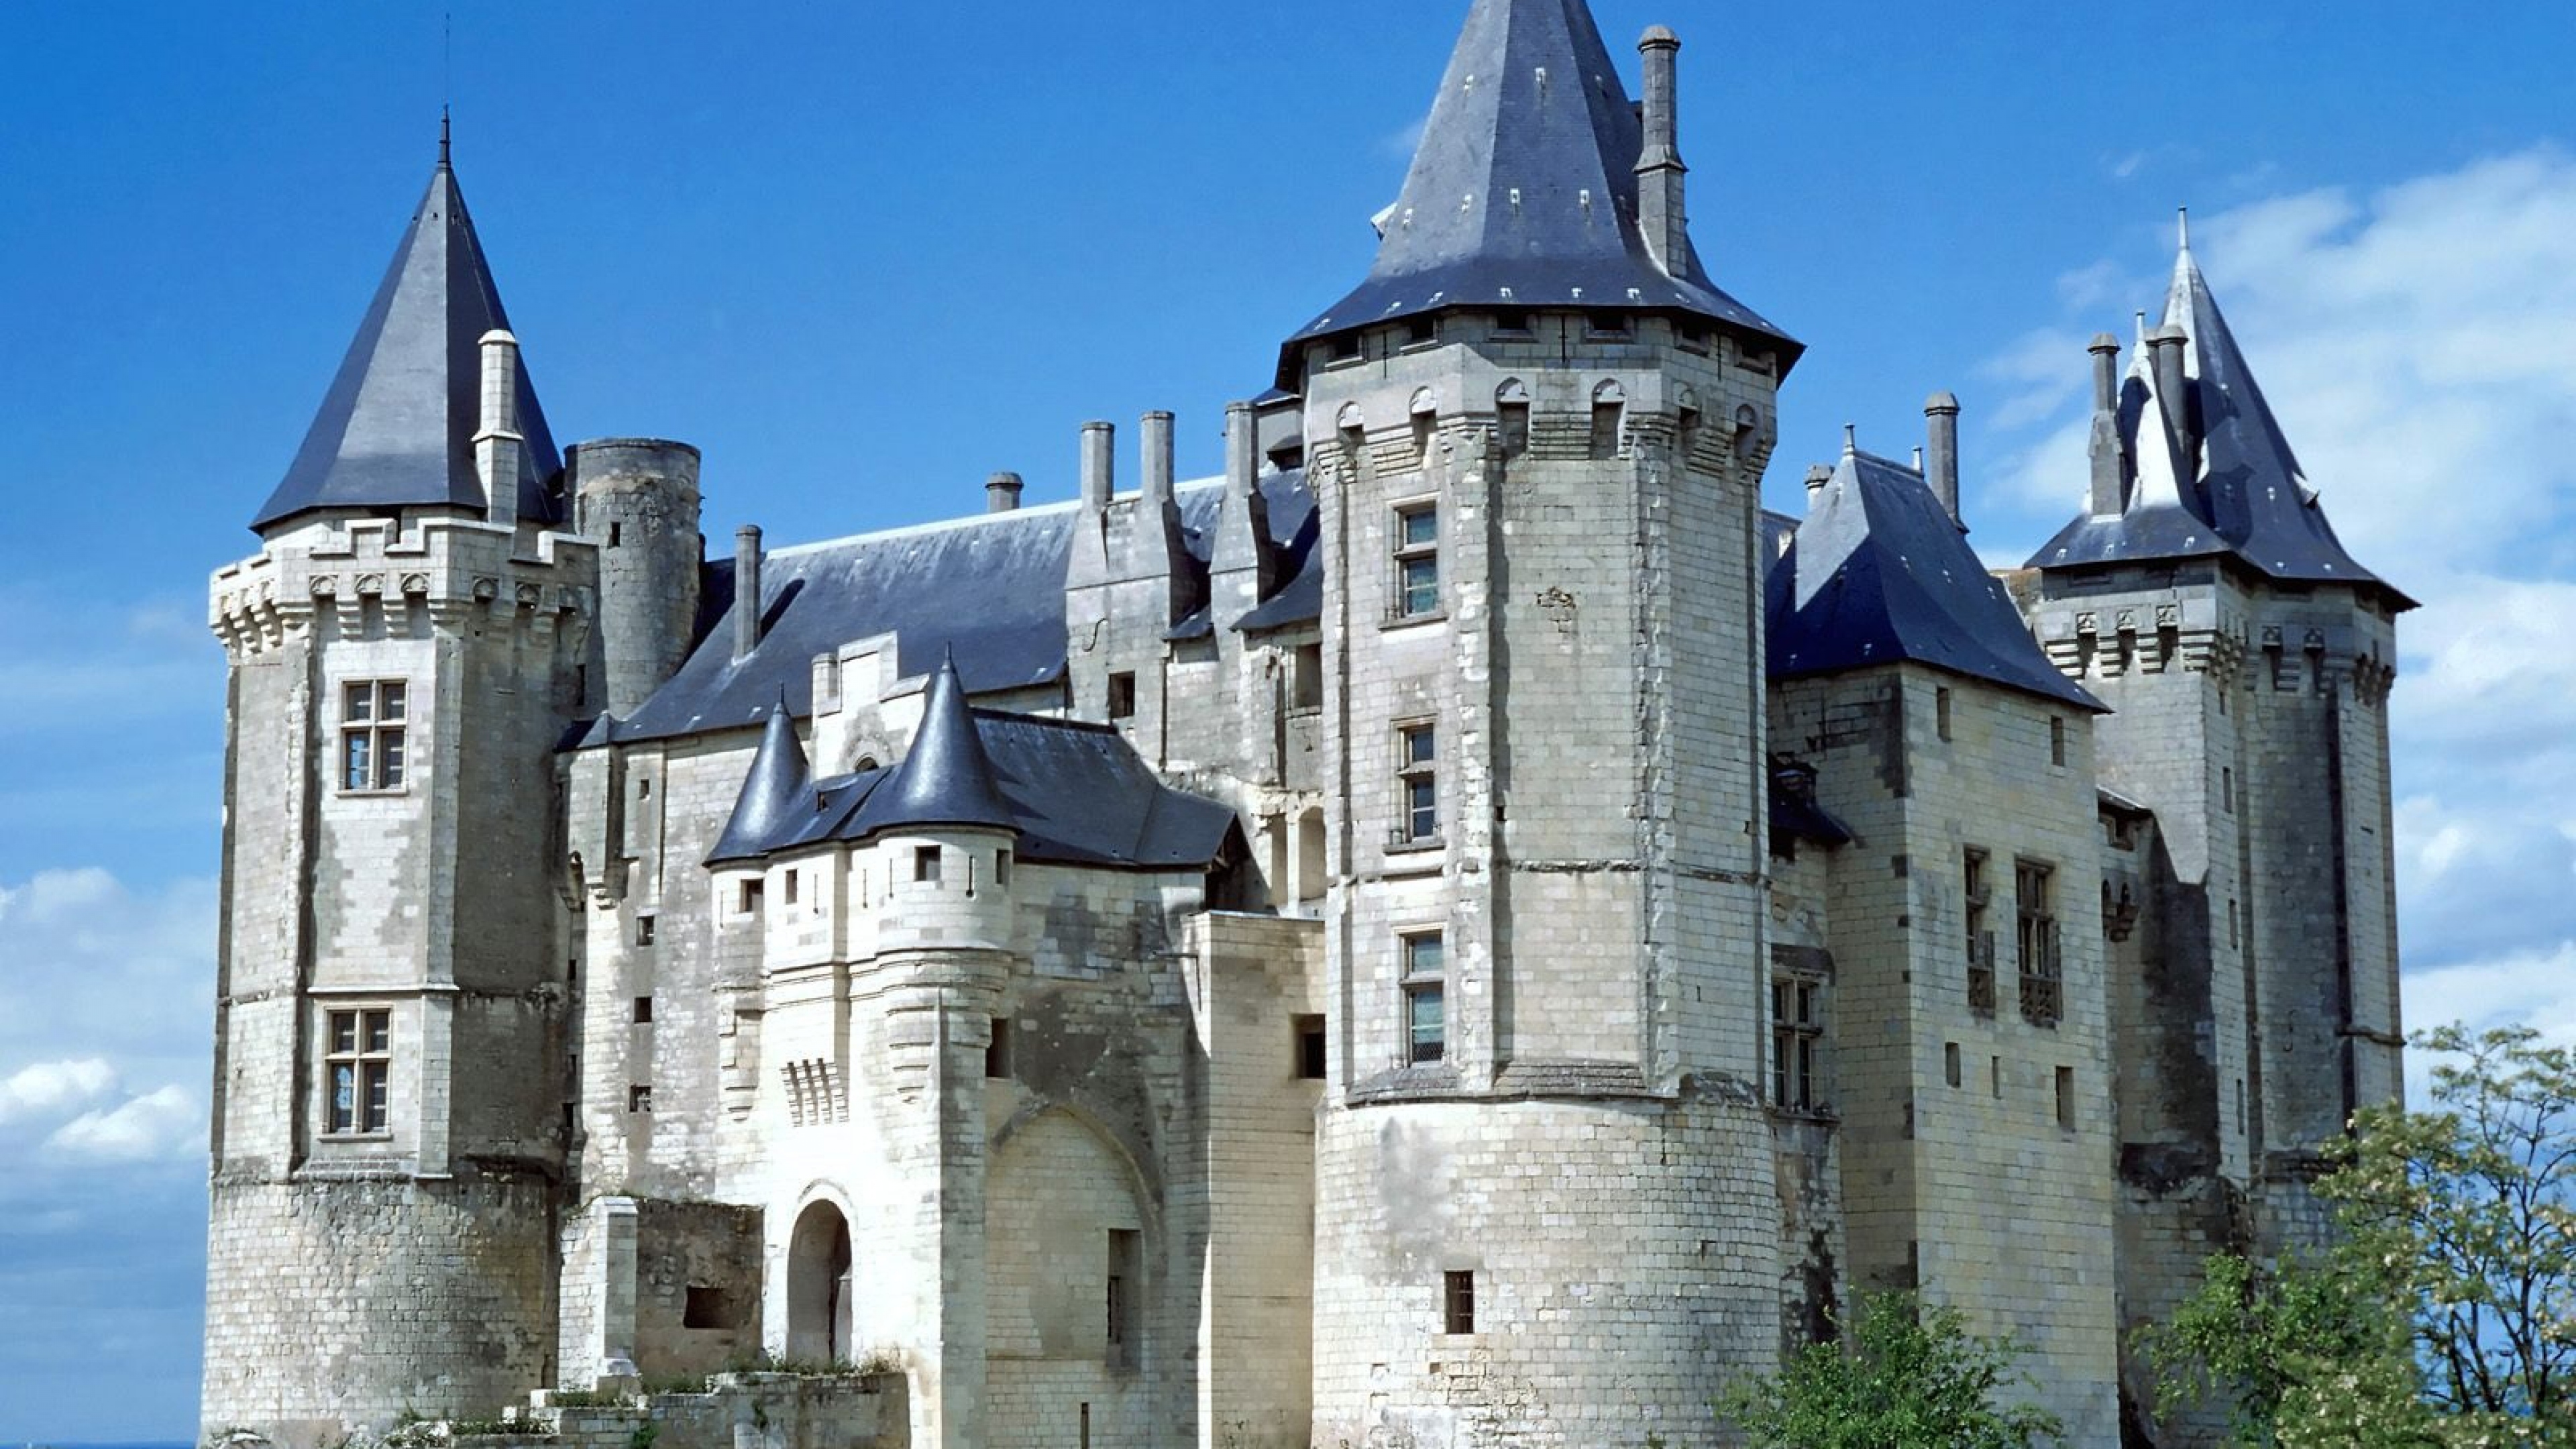 Wallpaper 3840x2160 Chateau de saumur Renaissance Castle France 4K